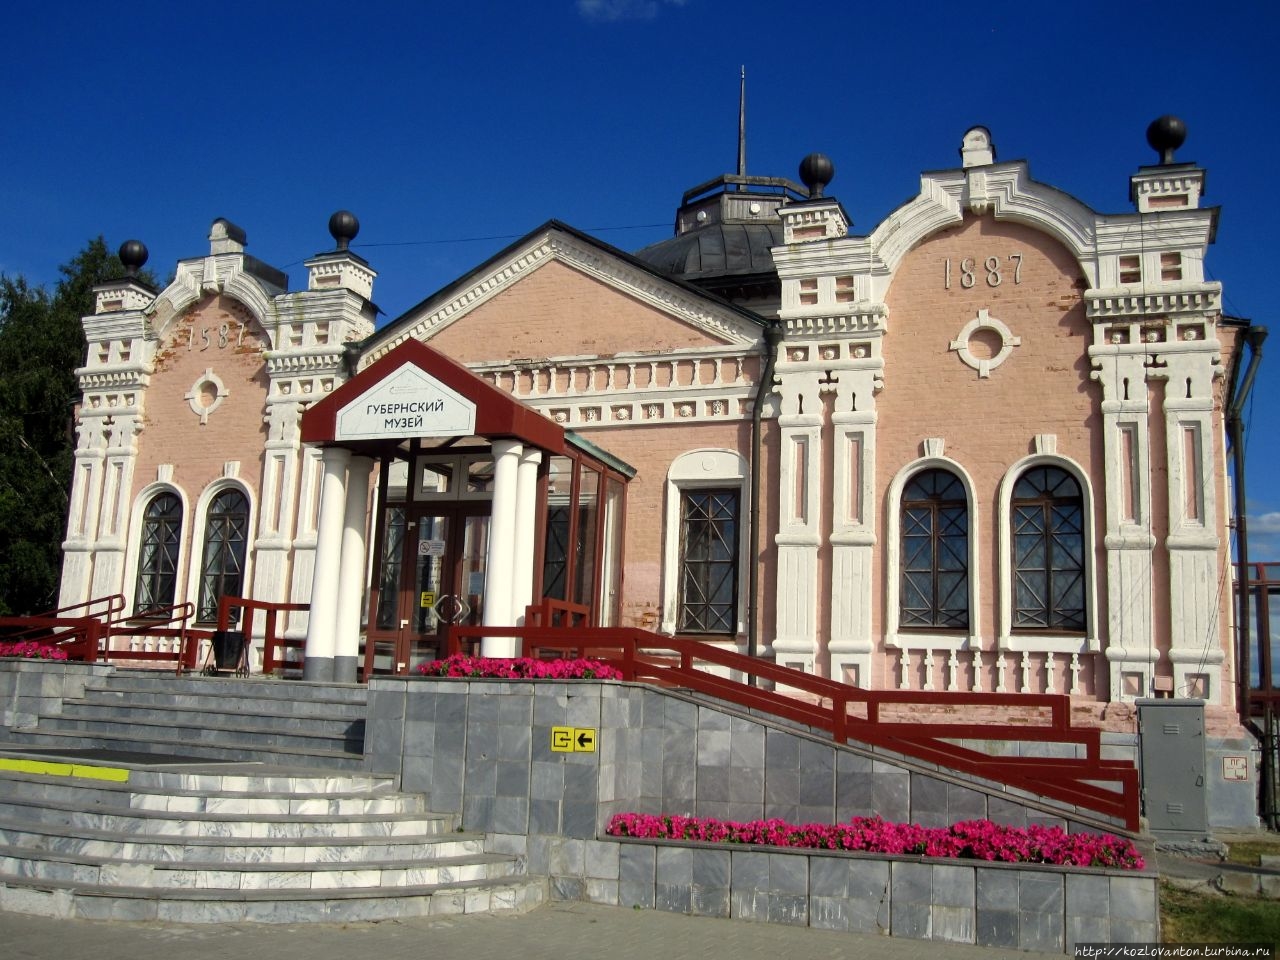 Рядом с садом — Губернский музей. Это первый музей Сибири, открывшийся 10 апреля 1889 г.  и находившийся под личным покровительством Николая II.